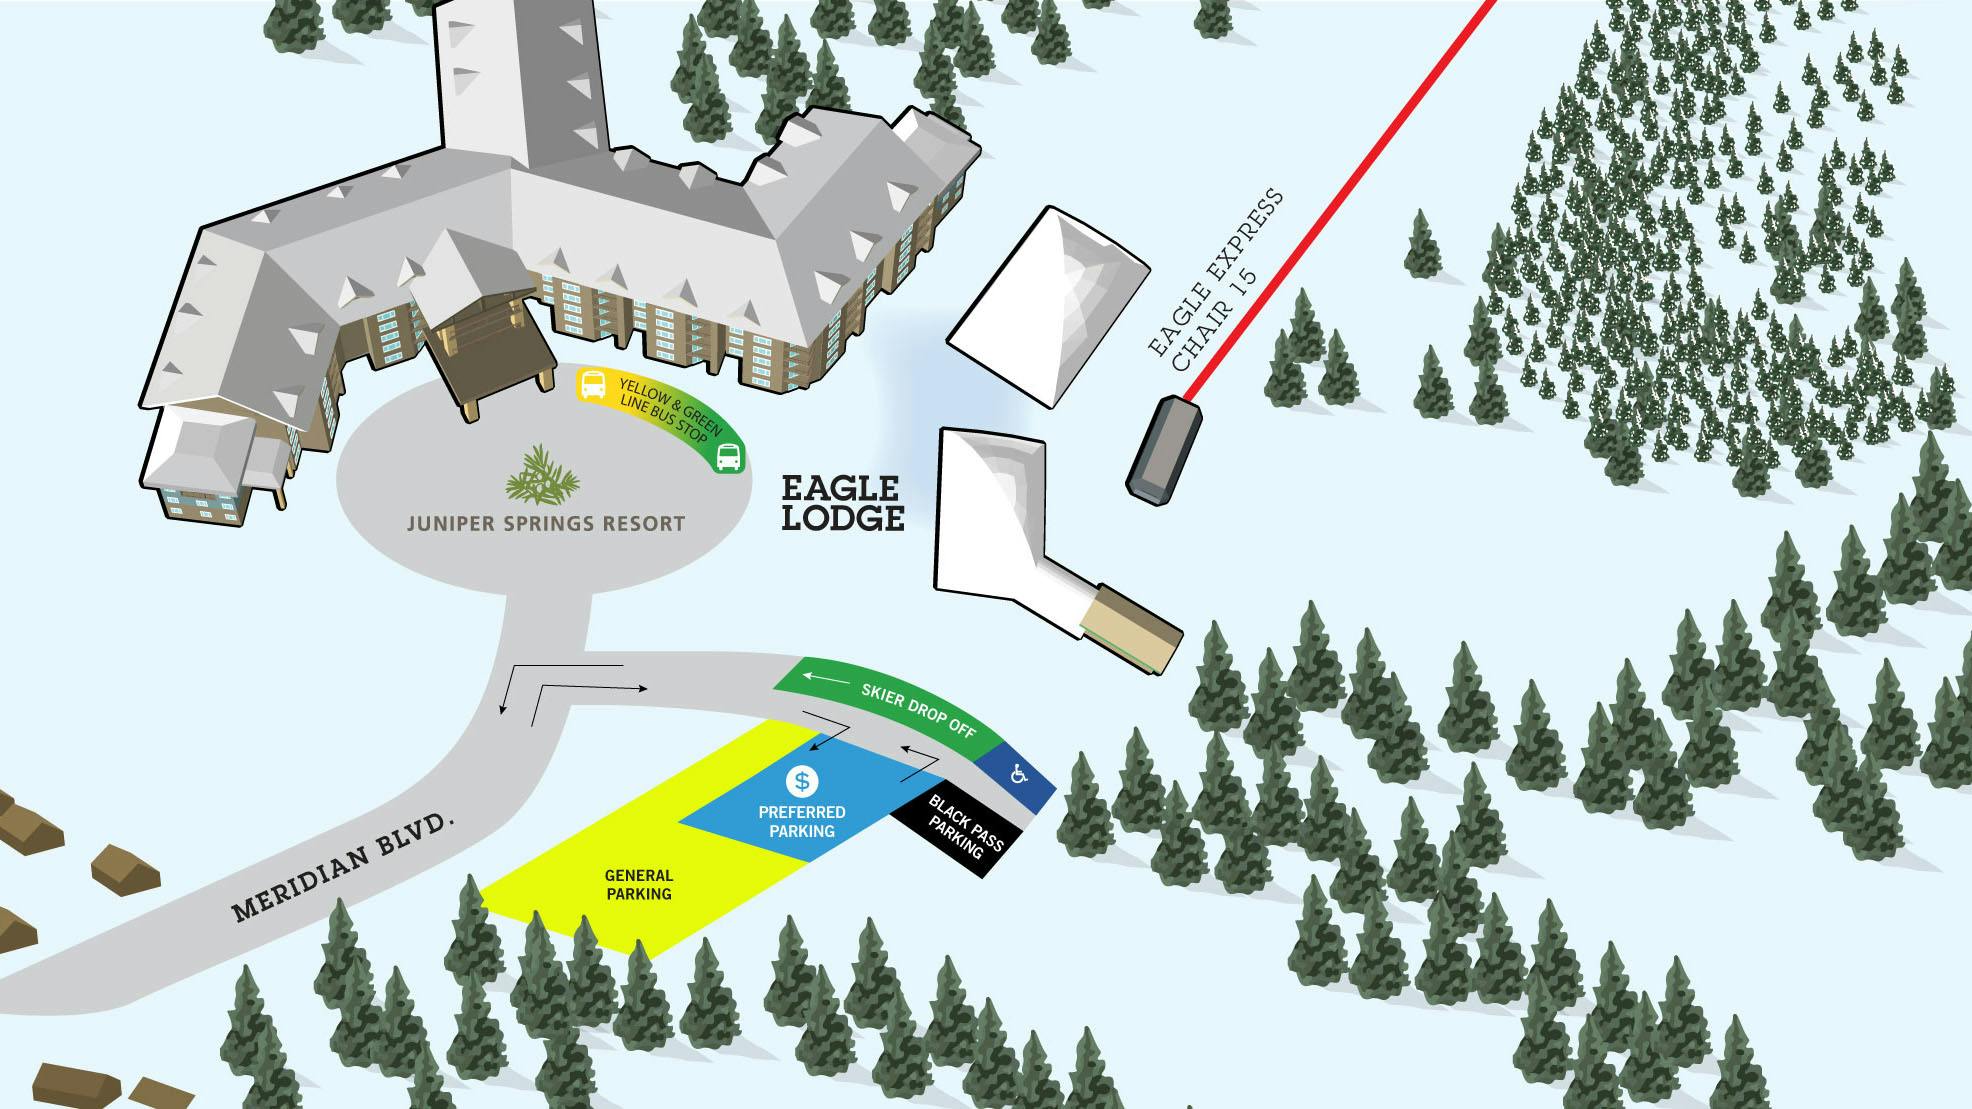 Eagle Lodge parking area map